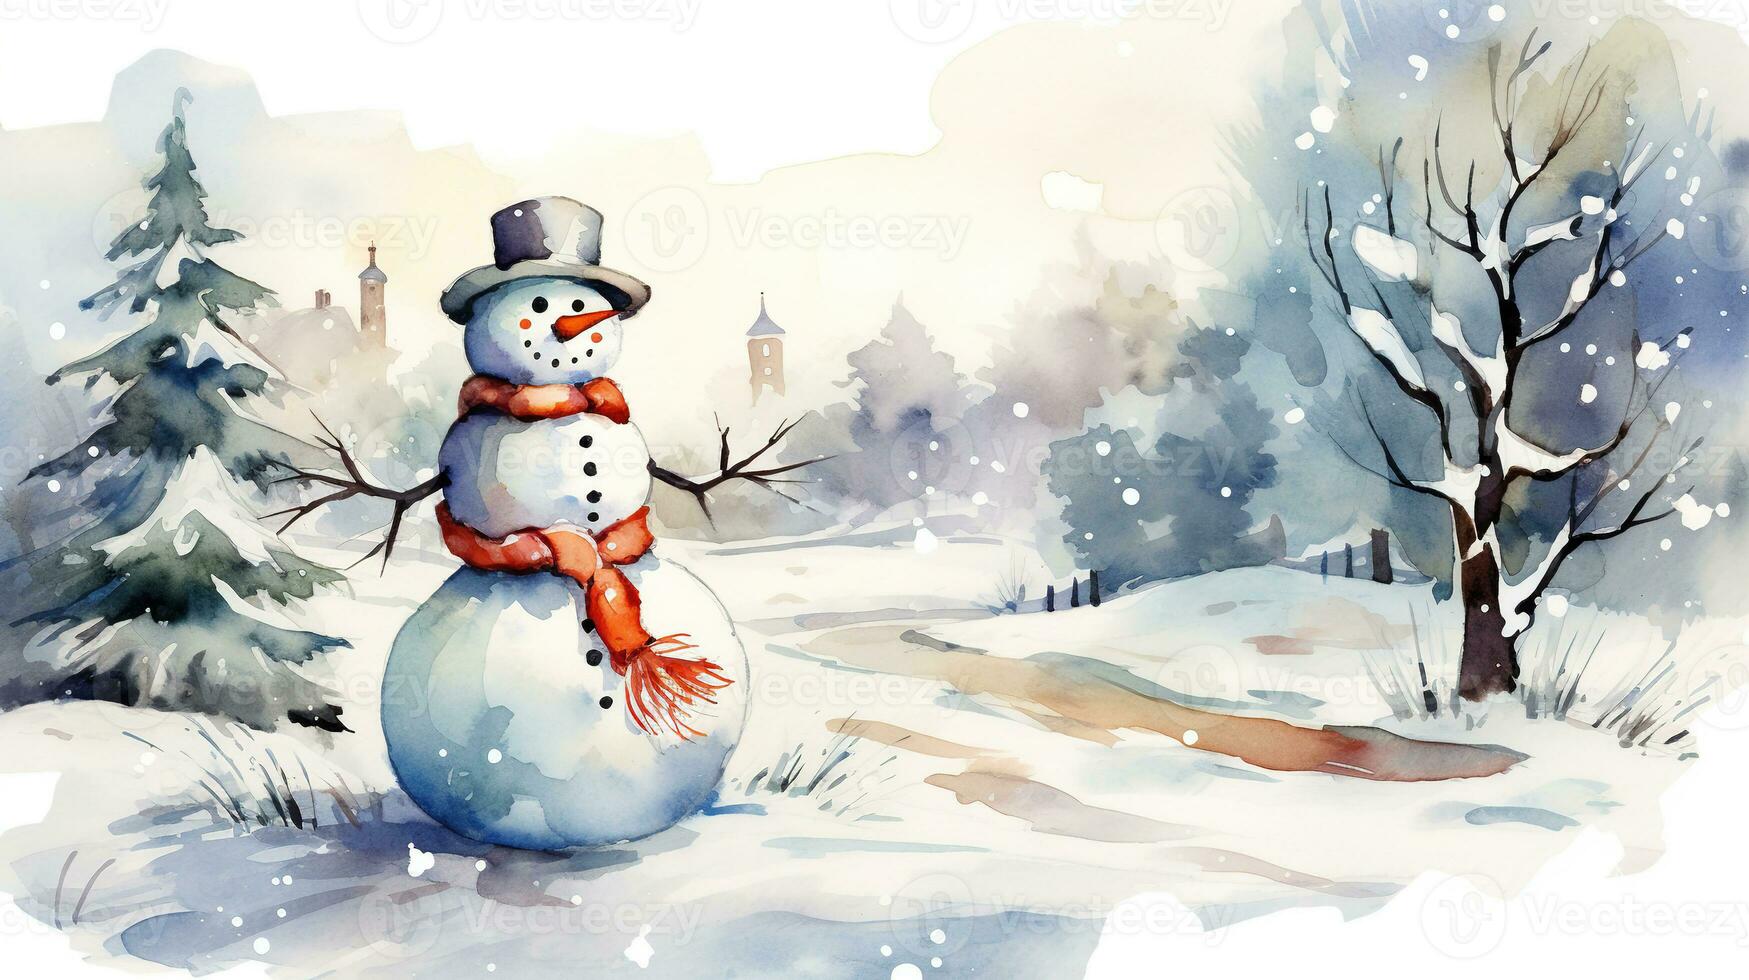 Kerstmis kaart met een sneeuwman. waterverf illustratie van een sneeuwman. foto